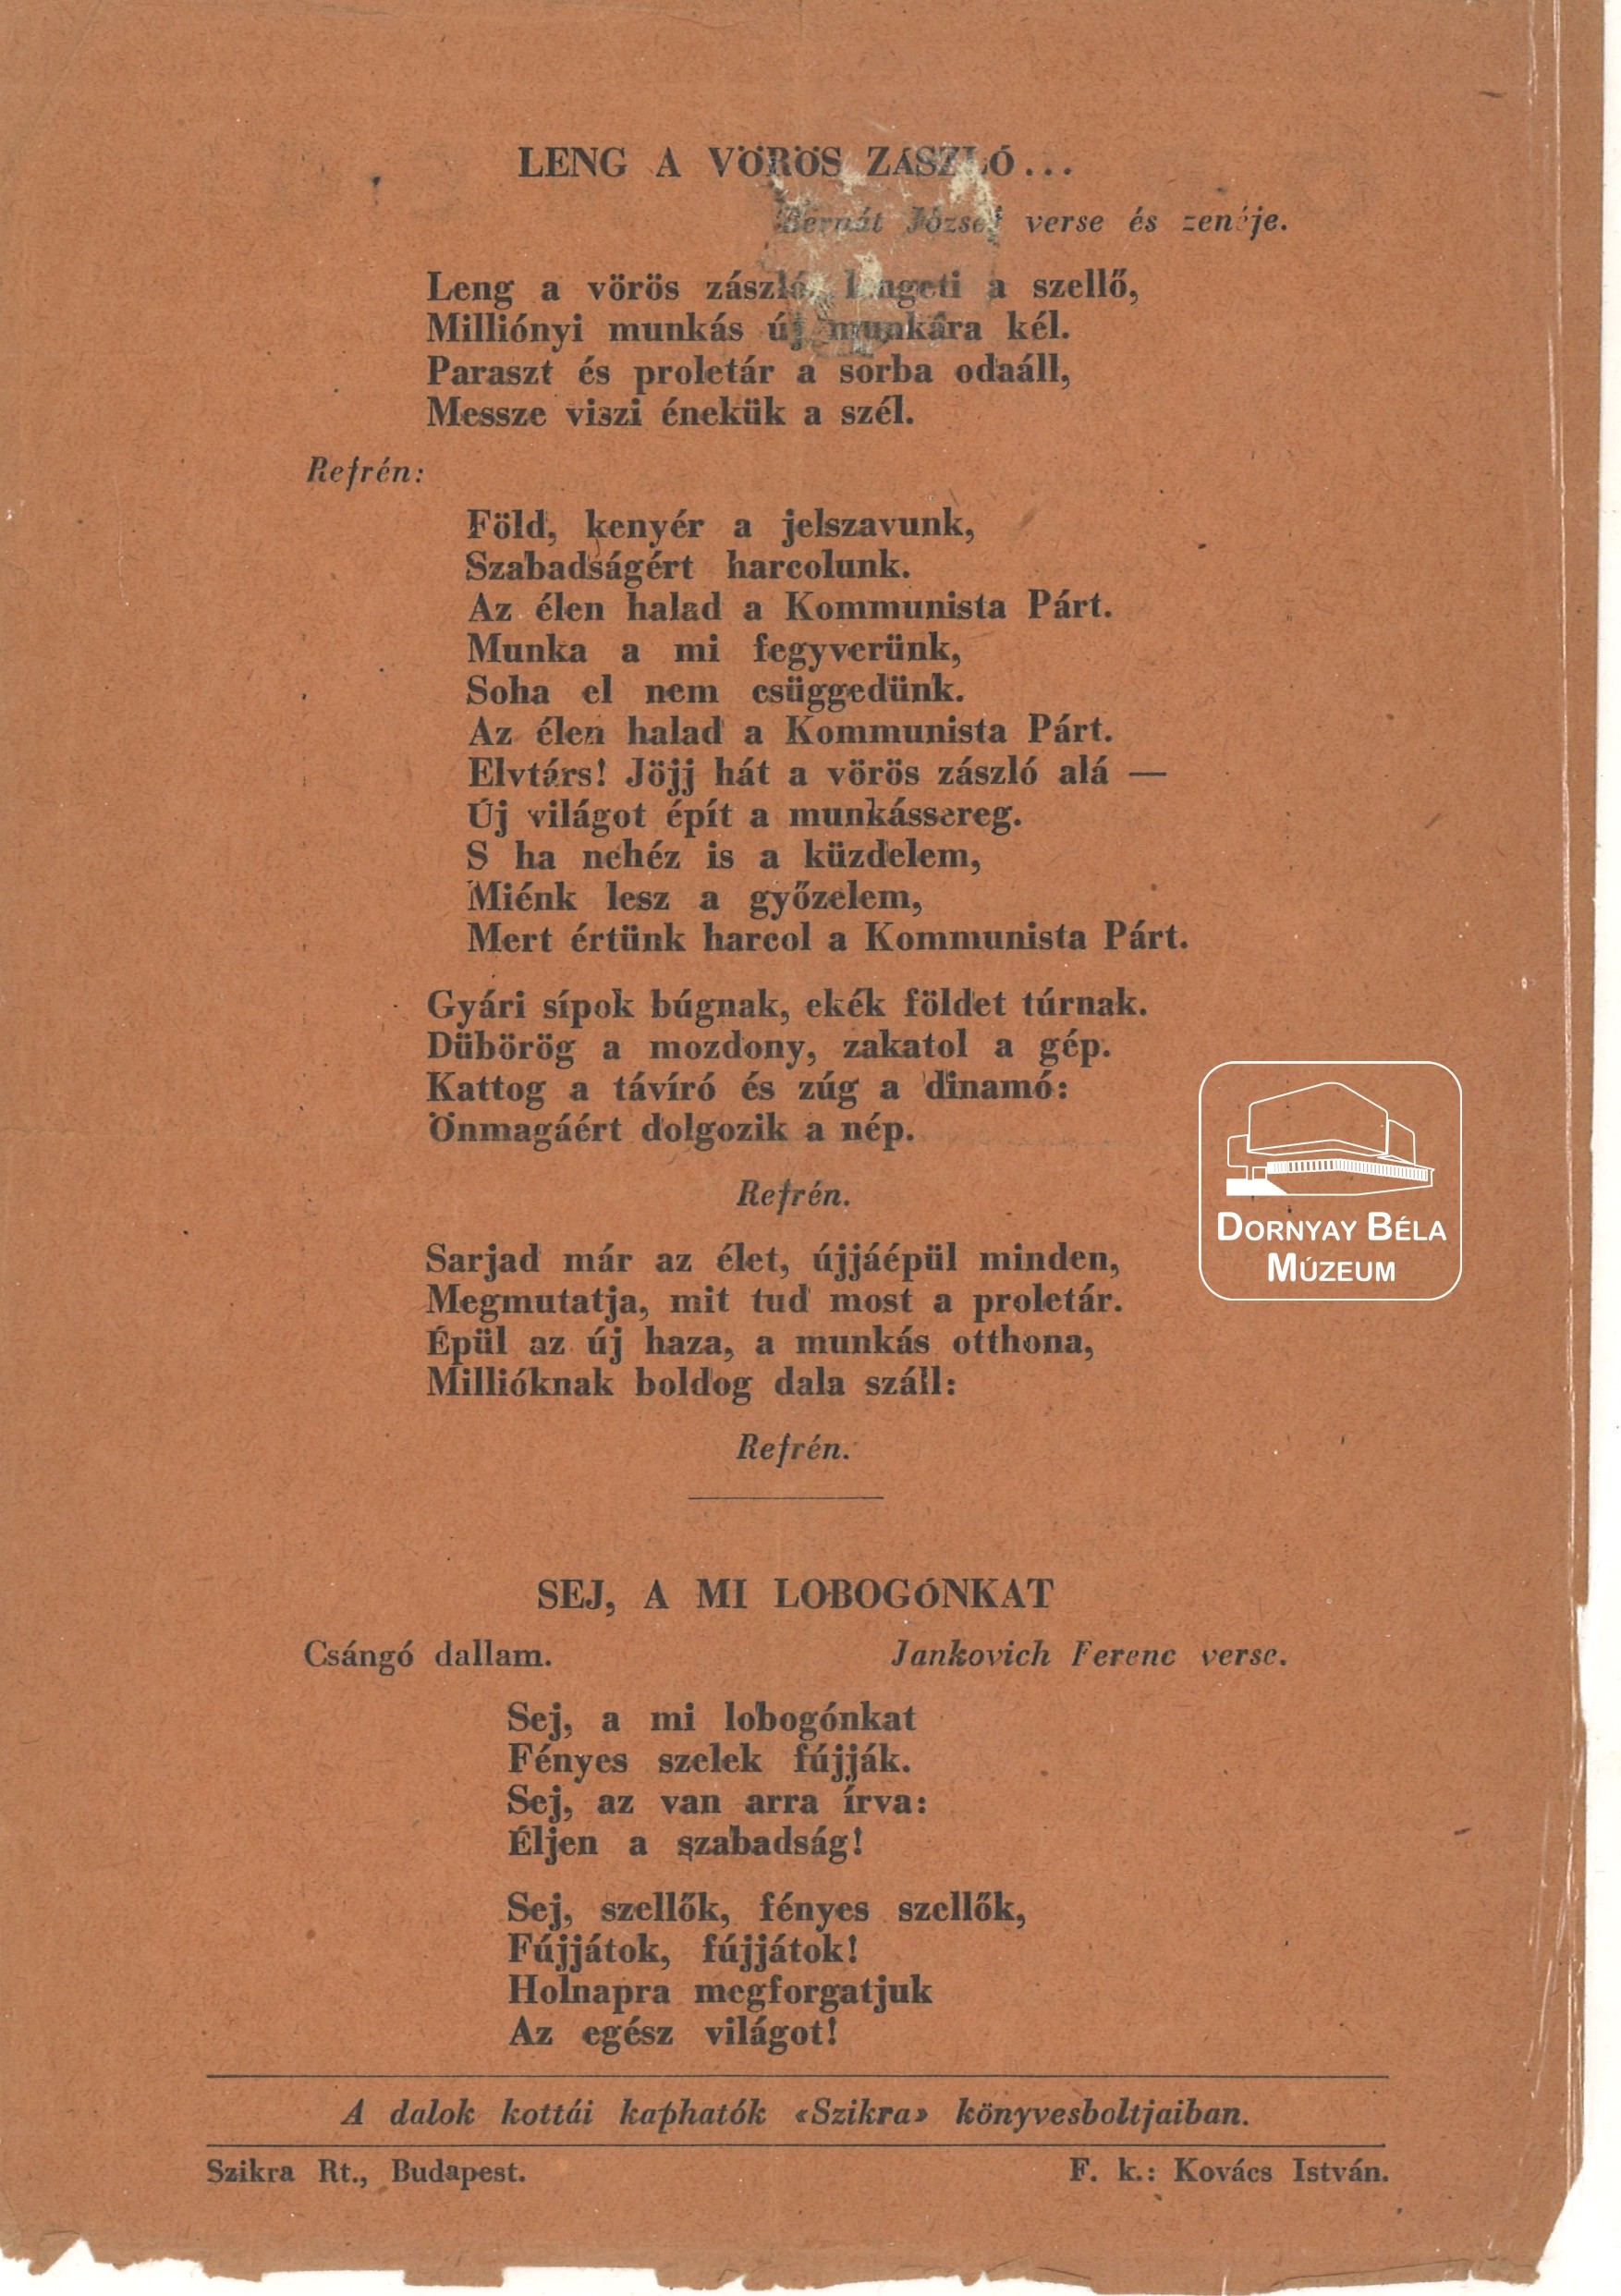 MKP röplap. Mozgalmi dalok, 1946 tavasza (Dornyay Béla Múzeum, Salgótarján CC BY-NC-SA)